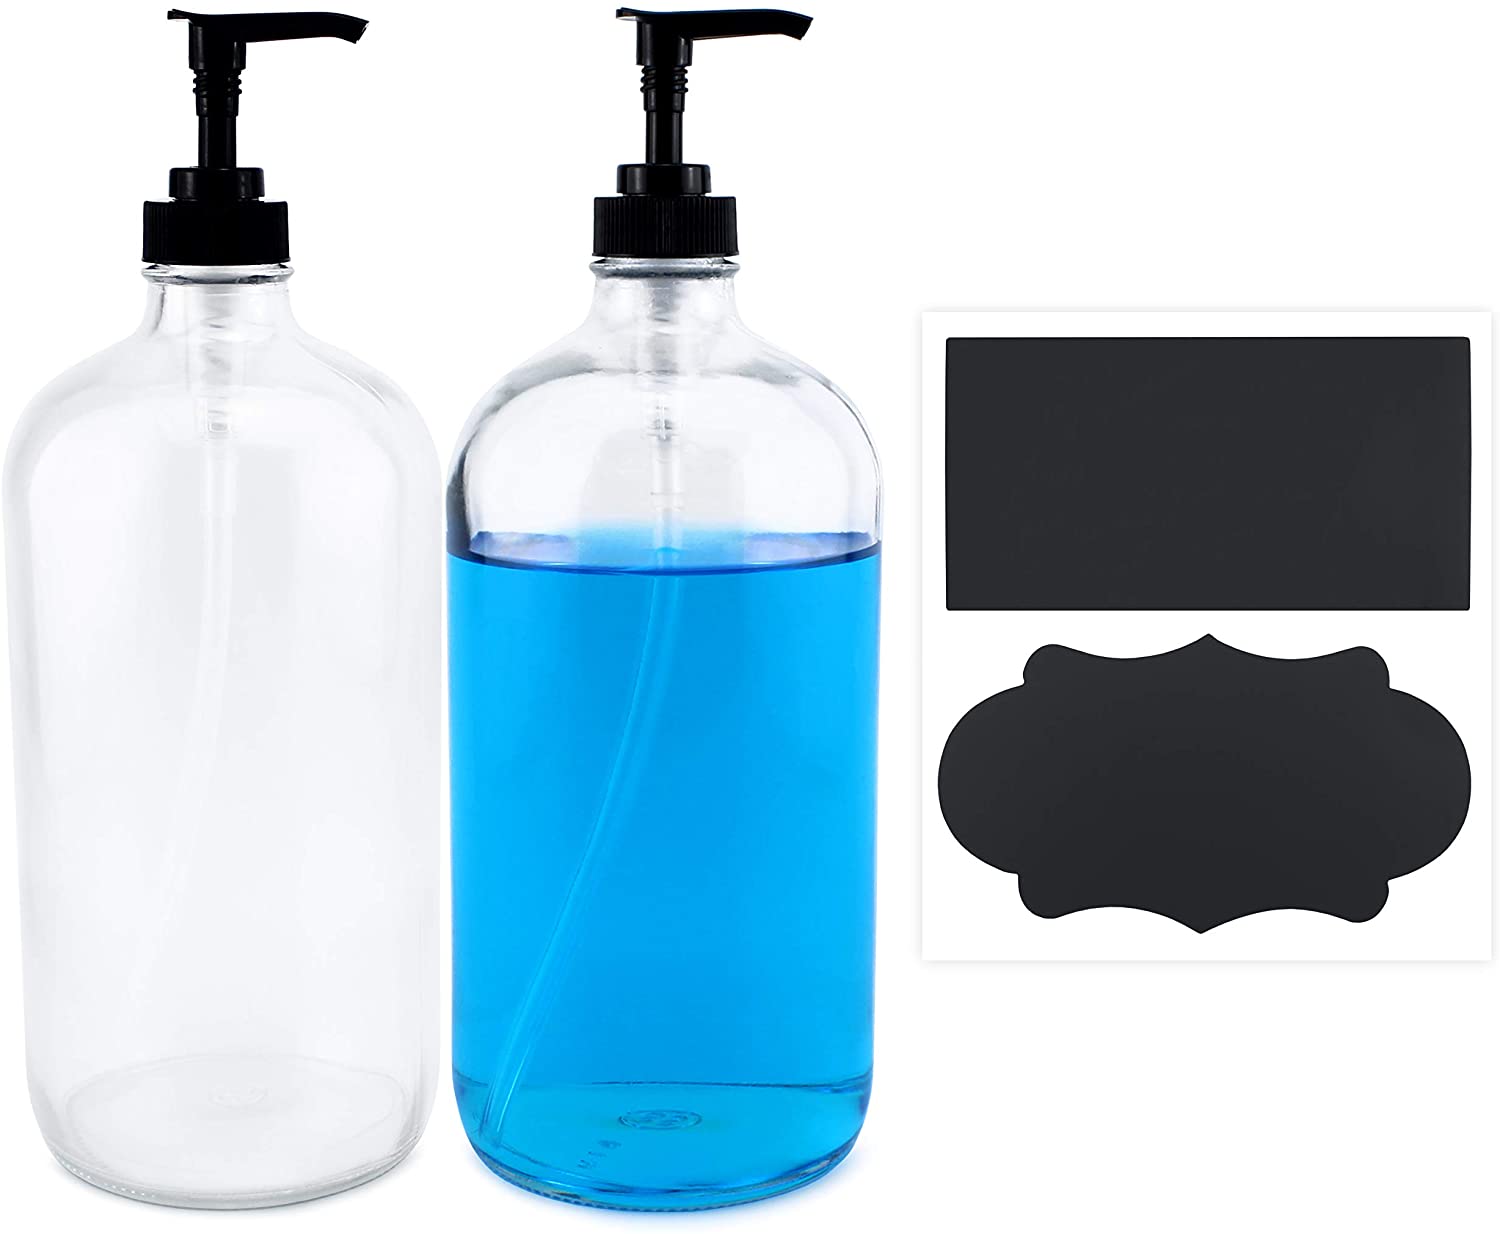 Cornucopia 32oz Clear Glass Pump Bottles (2-Pack); Quart Size Soap Dispensers w/Black Plastic Lotion Locking Pumps; Includes Chalk Labels